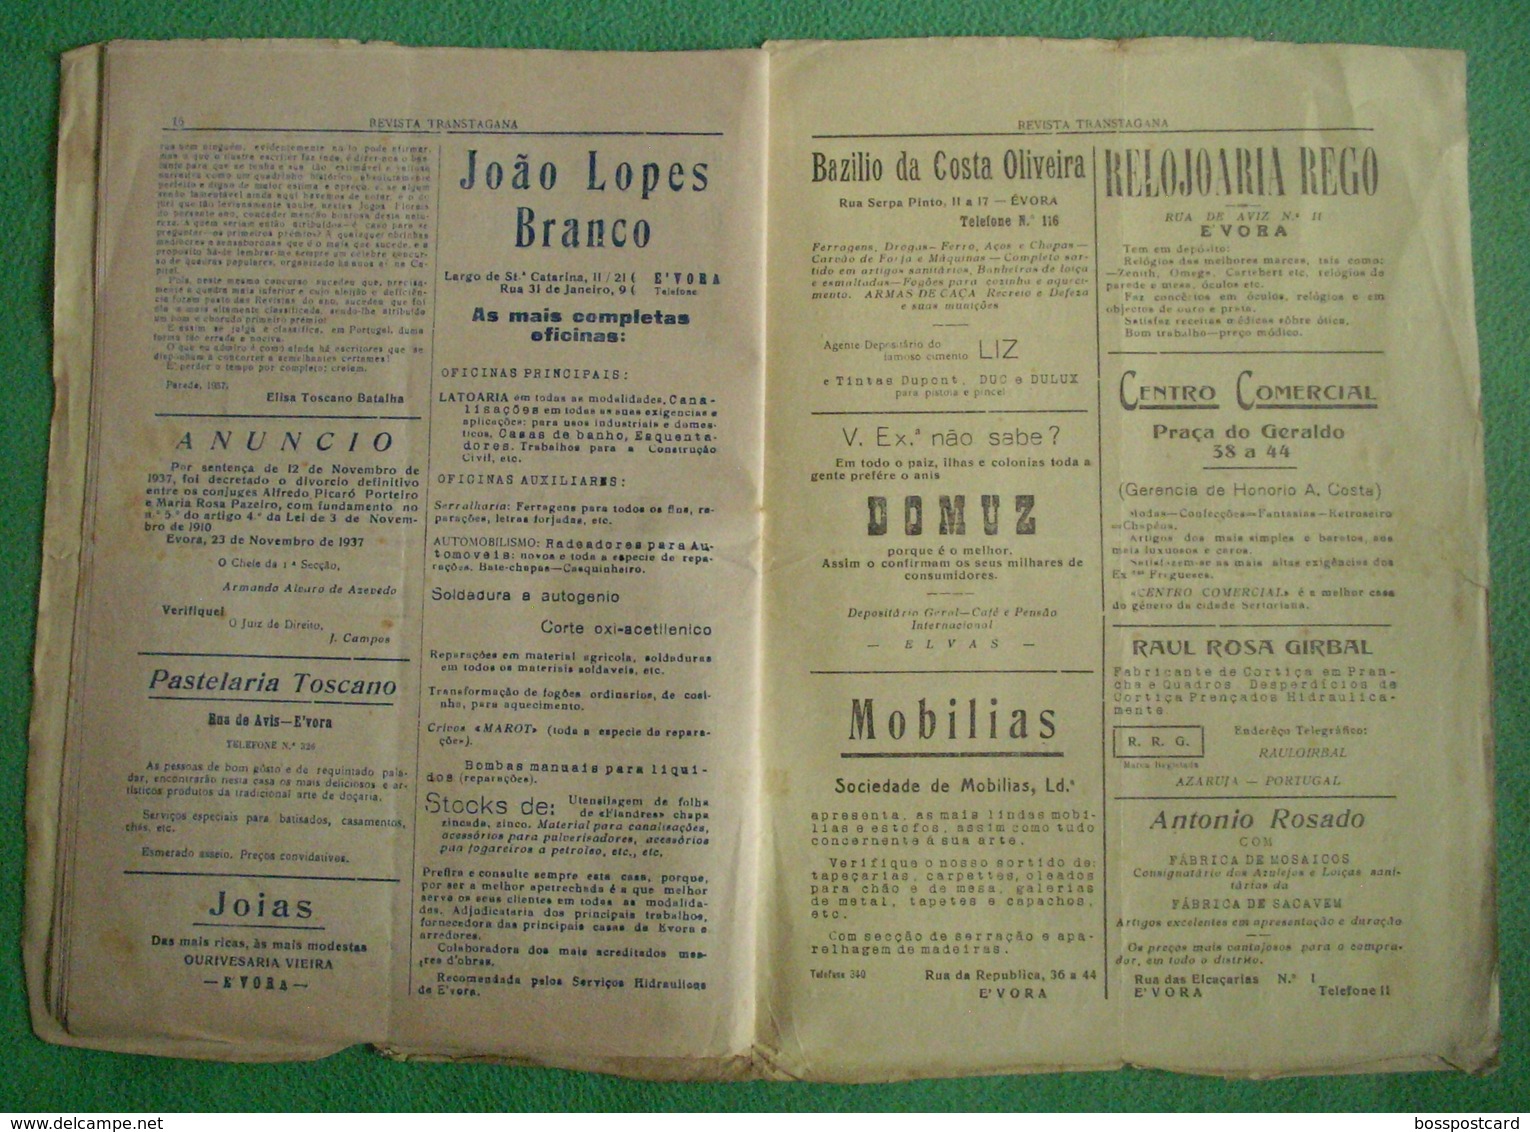 Évora - "Revista Transtagana" Nº 46 de 1938 - Jornal - Imprensa - Publicidade